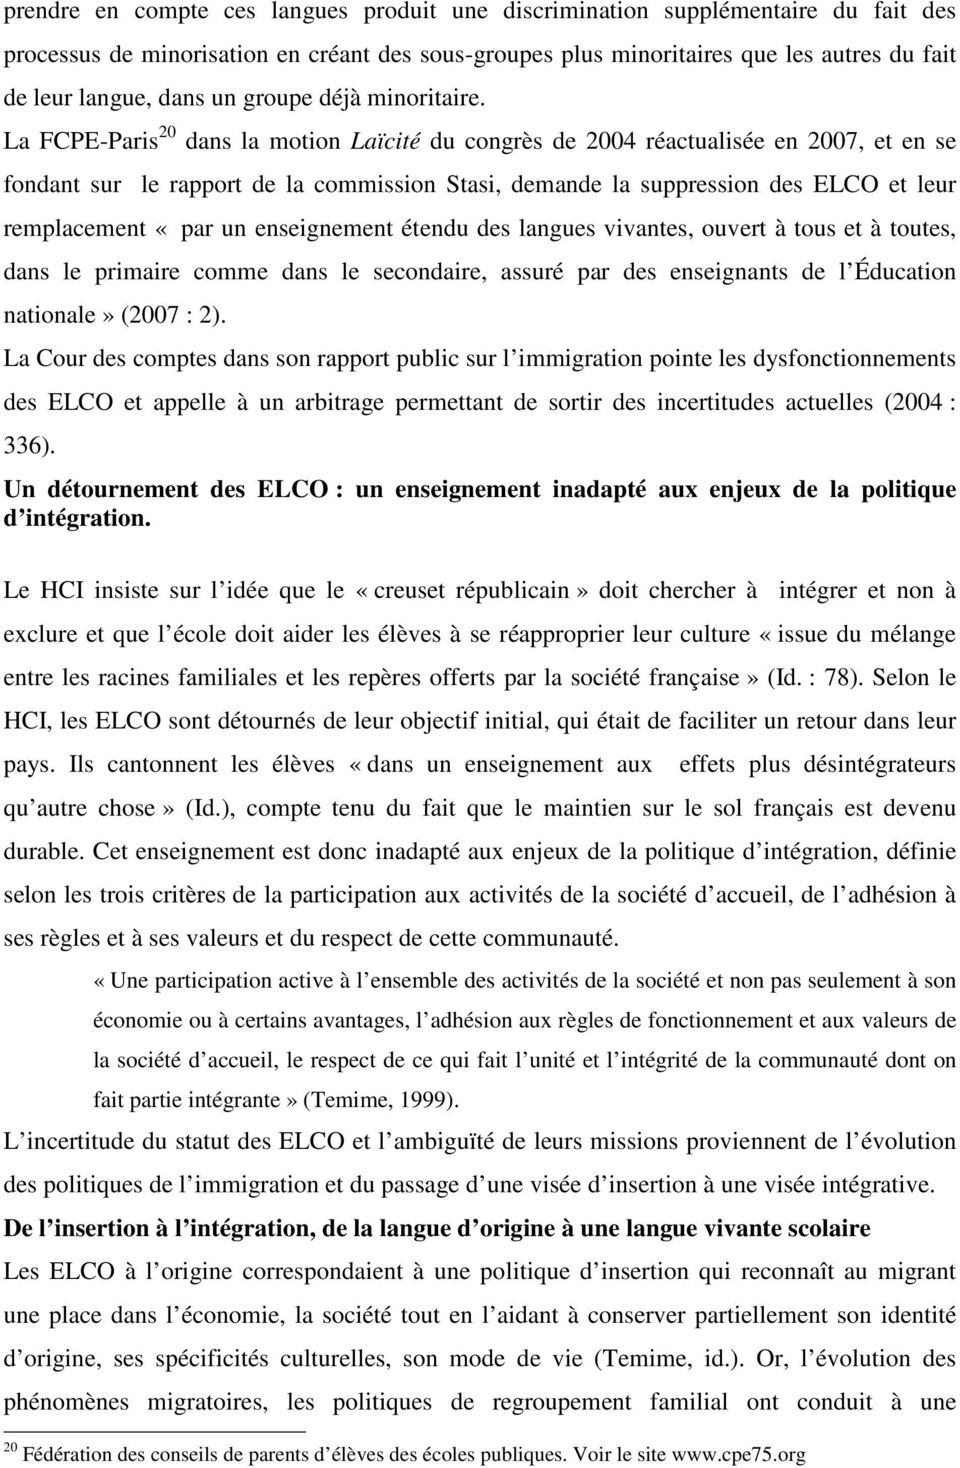 La FCPE-Paris 20 dans la motion Laïcité du congrès de 2004 réactualisée en 2007, et en se fondant sur le rapport de la commission Stasi, demande la suppression des ELCO et leur remplacement «par un